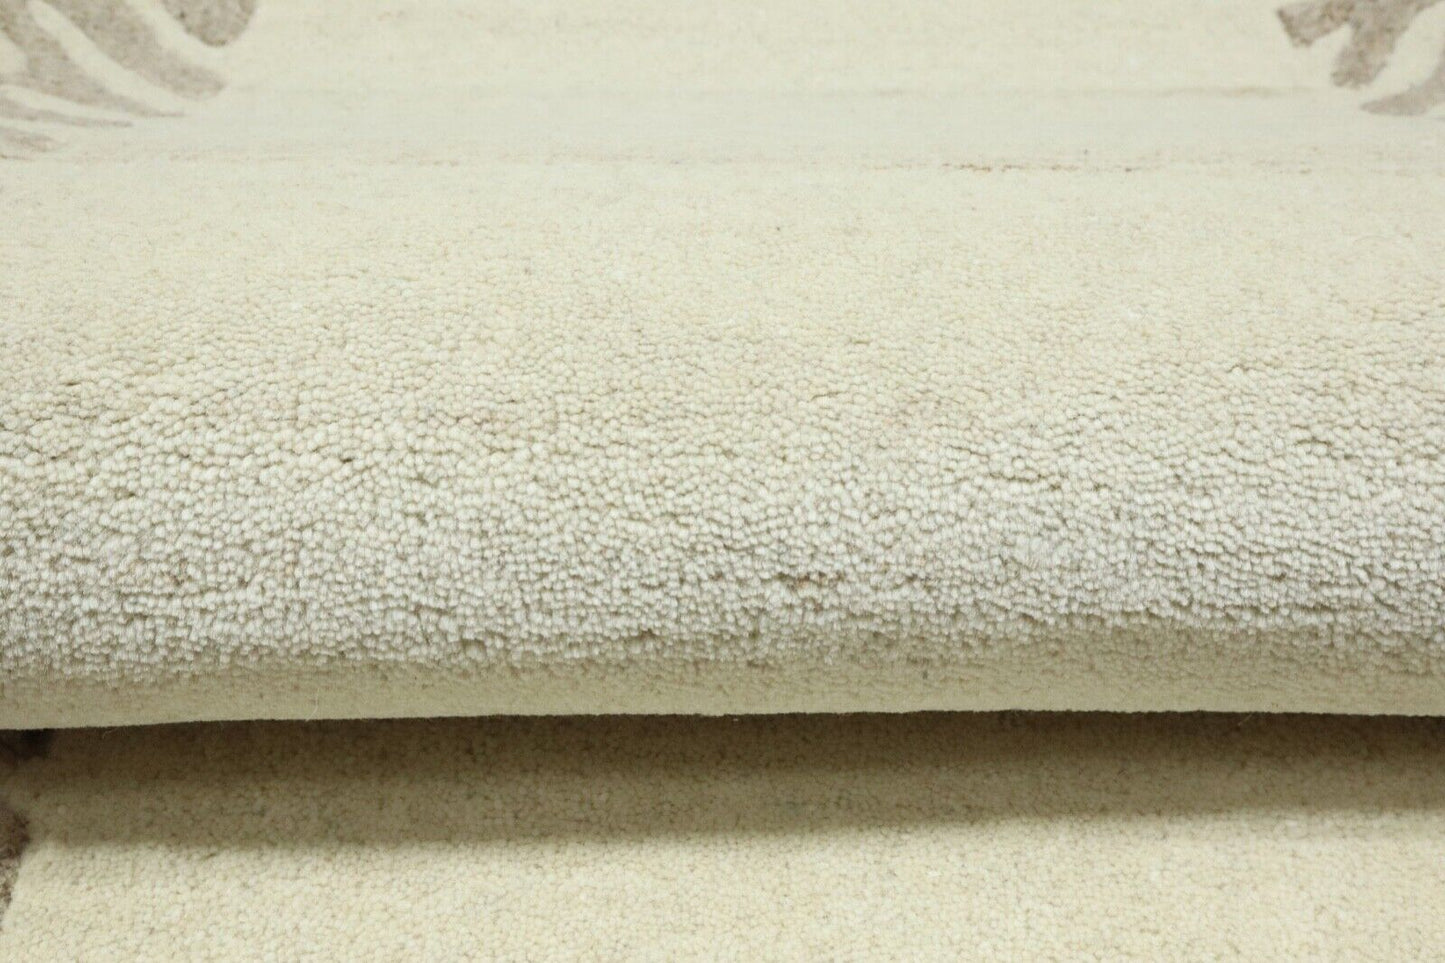 Gabbeh Teppich 100% Wolle 70X140 cm Handarbeit Grau Beige Handgetuftet T1010